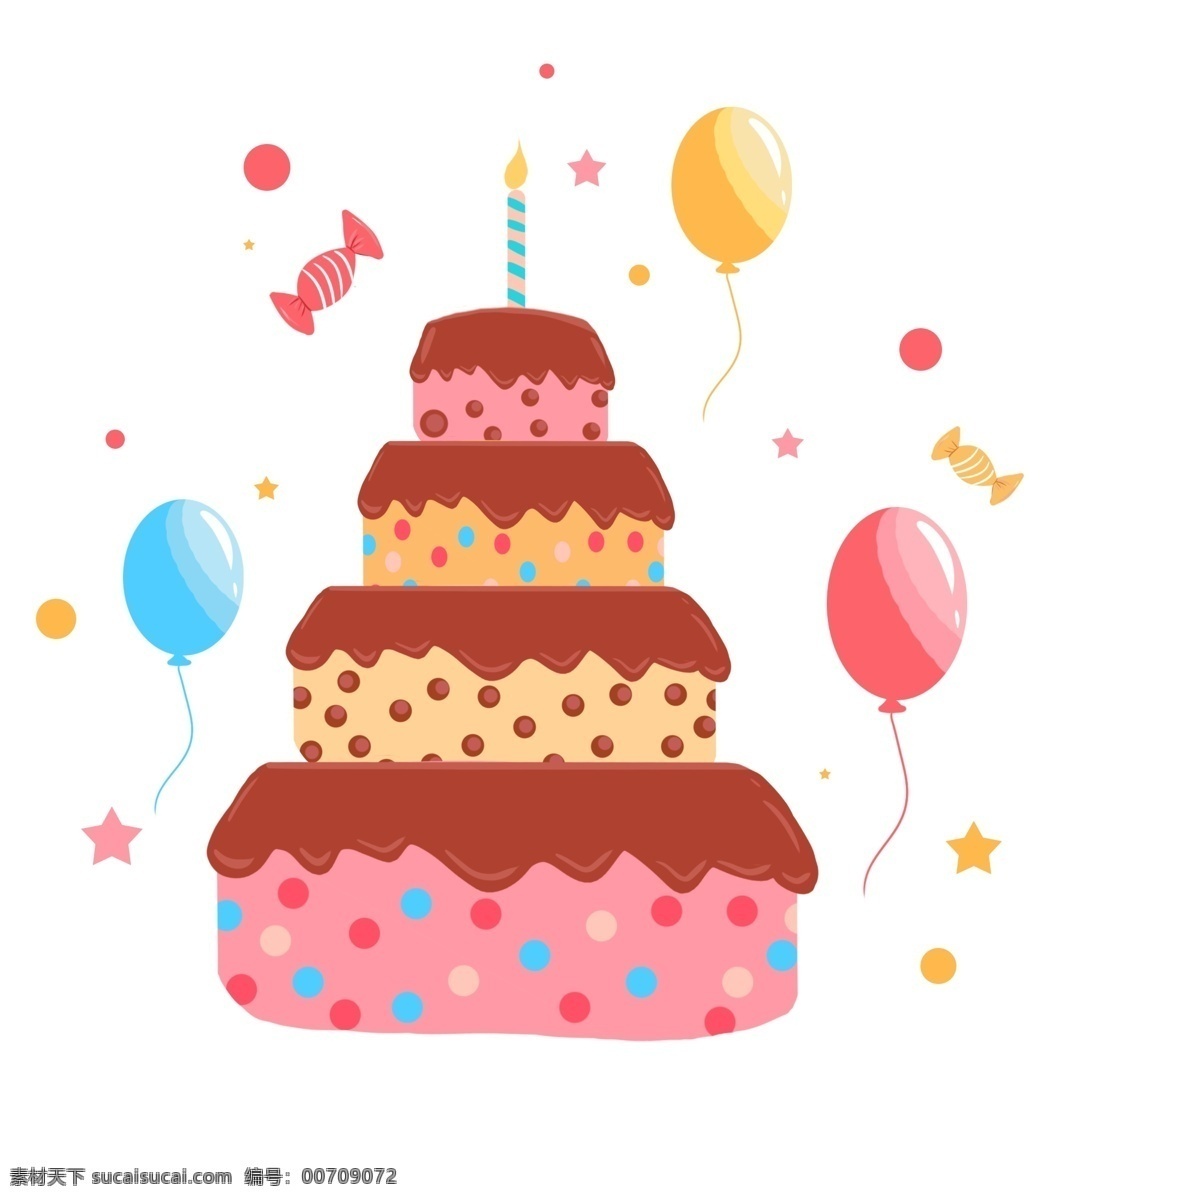 生日 快乐 双层 蛋糕 甜品 元素 生日快乐 生日蛋糕 双层蛋糕 多层蛋糕 气球 庆生 蛋糕素材 蛋糕矢量图 蛋糕元素 卡通蛋糕 糖果 甜品素材 甜品元素 创意 儿童 插画 手绘 可爱 庆祝 水果蛋糕 奶油蛋糕